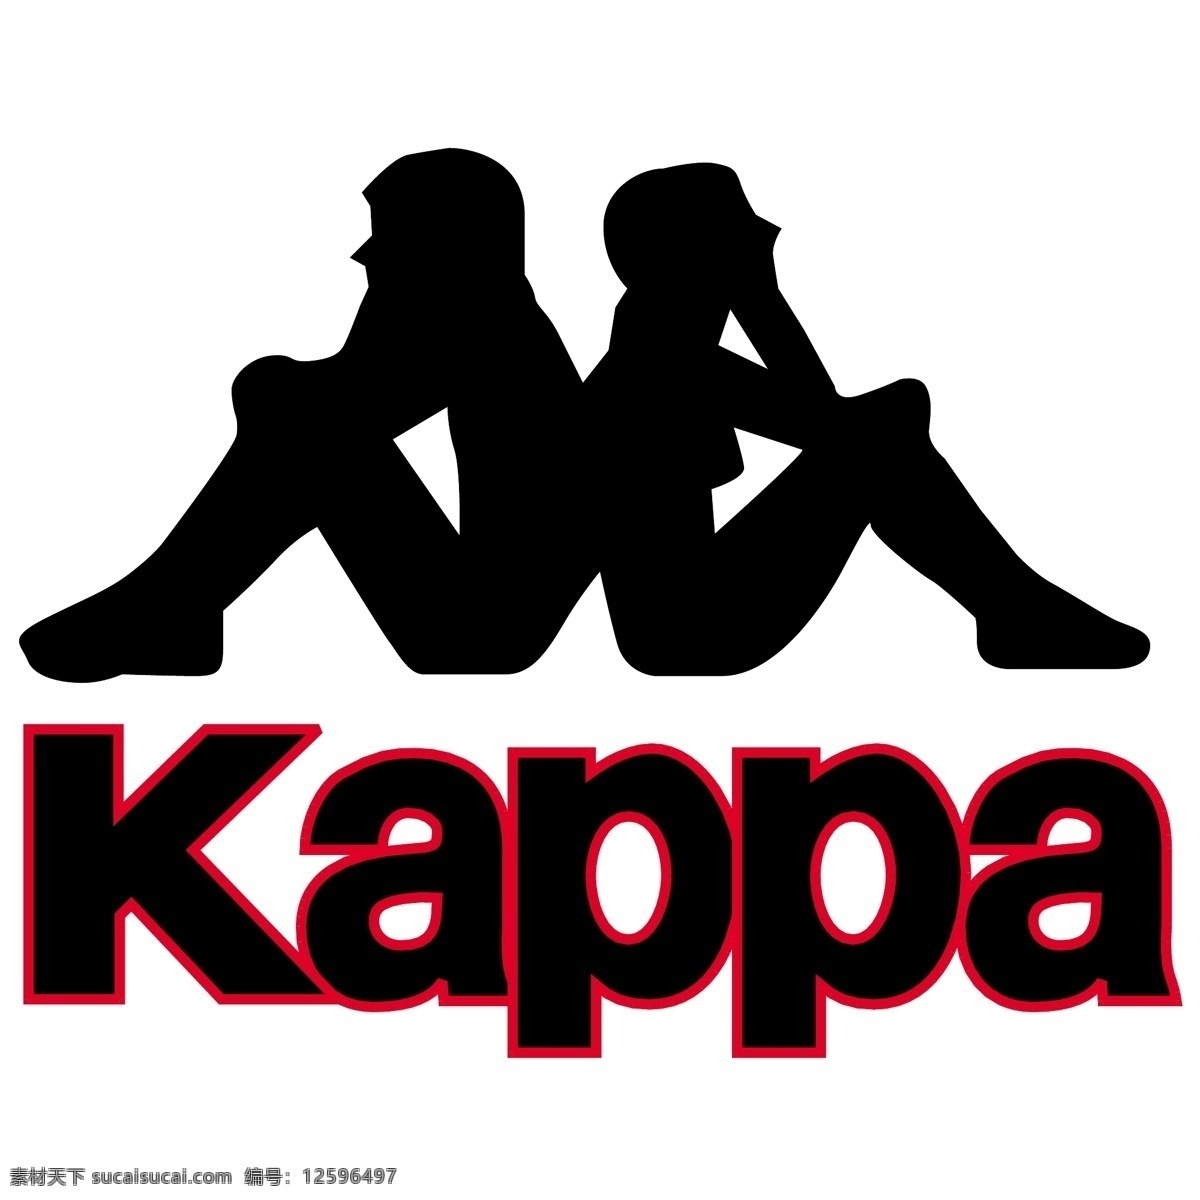 背靠背 kappa 企业 标志 运动品牌 标识标志图标 logo 运动 品牌 矢量图库